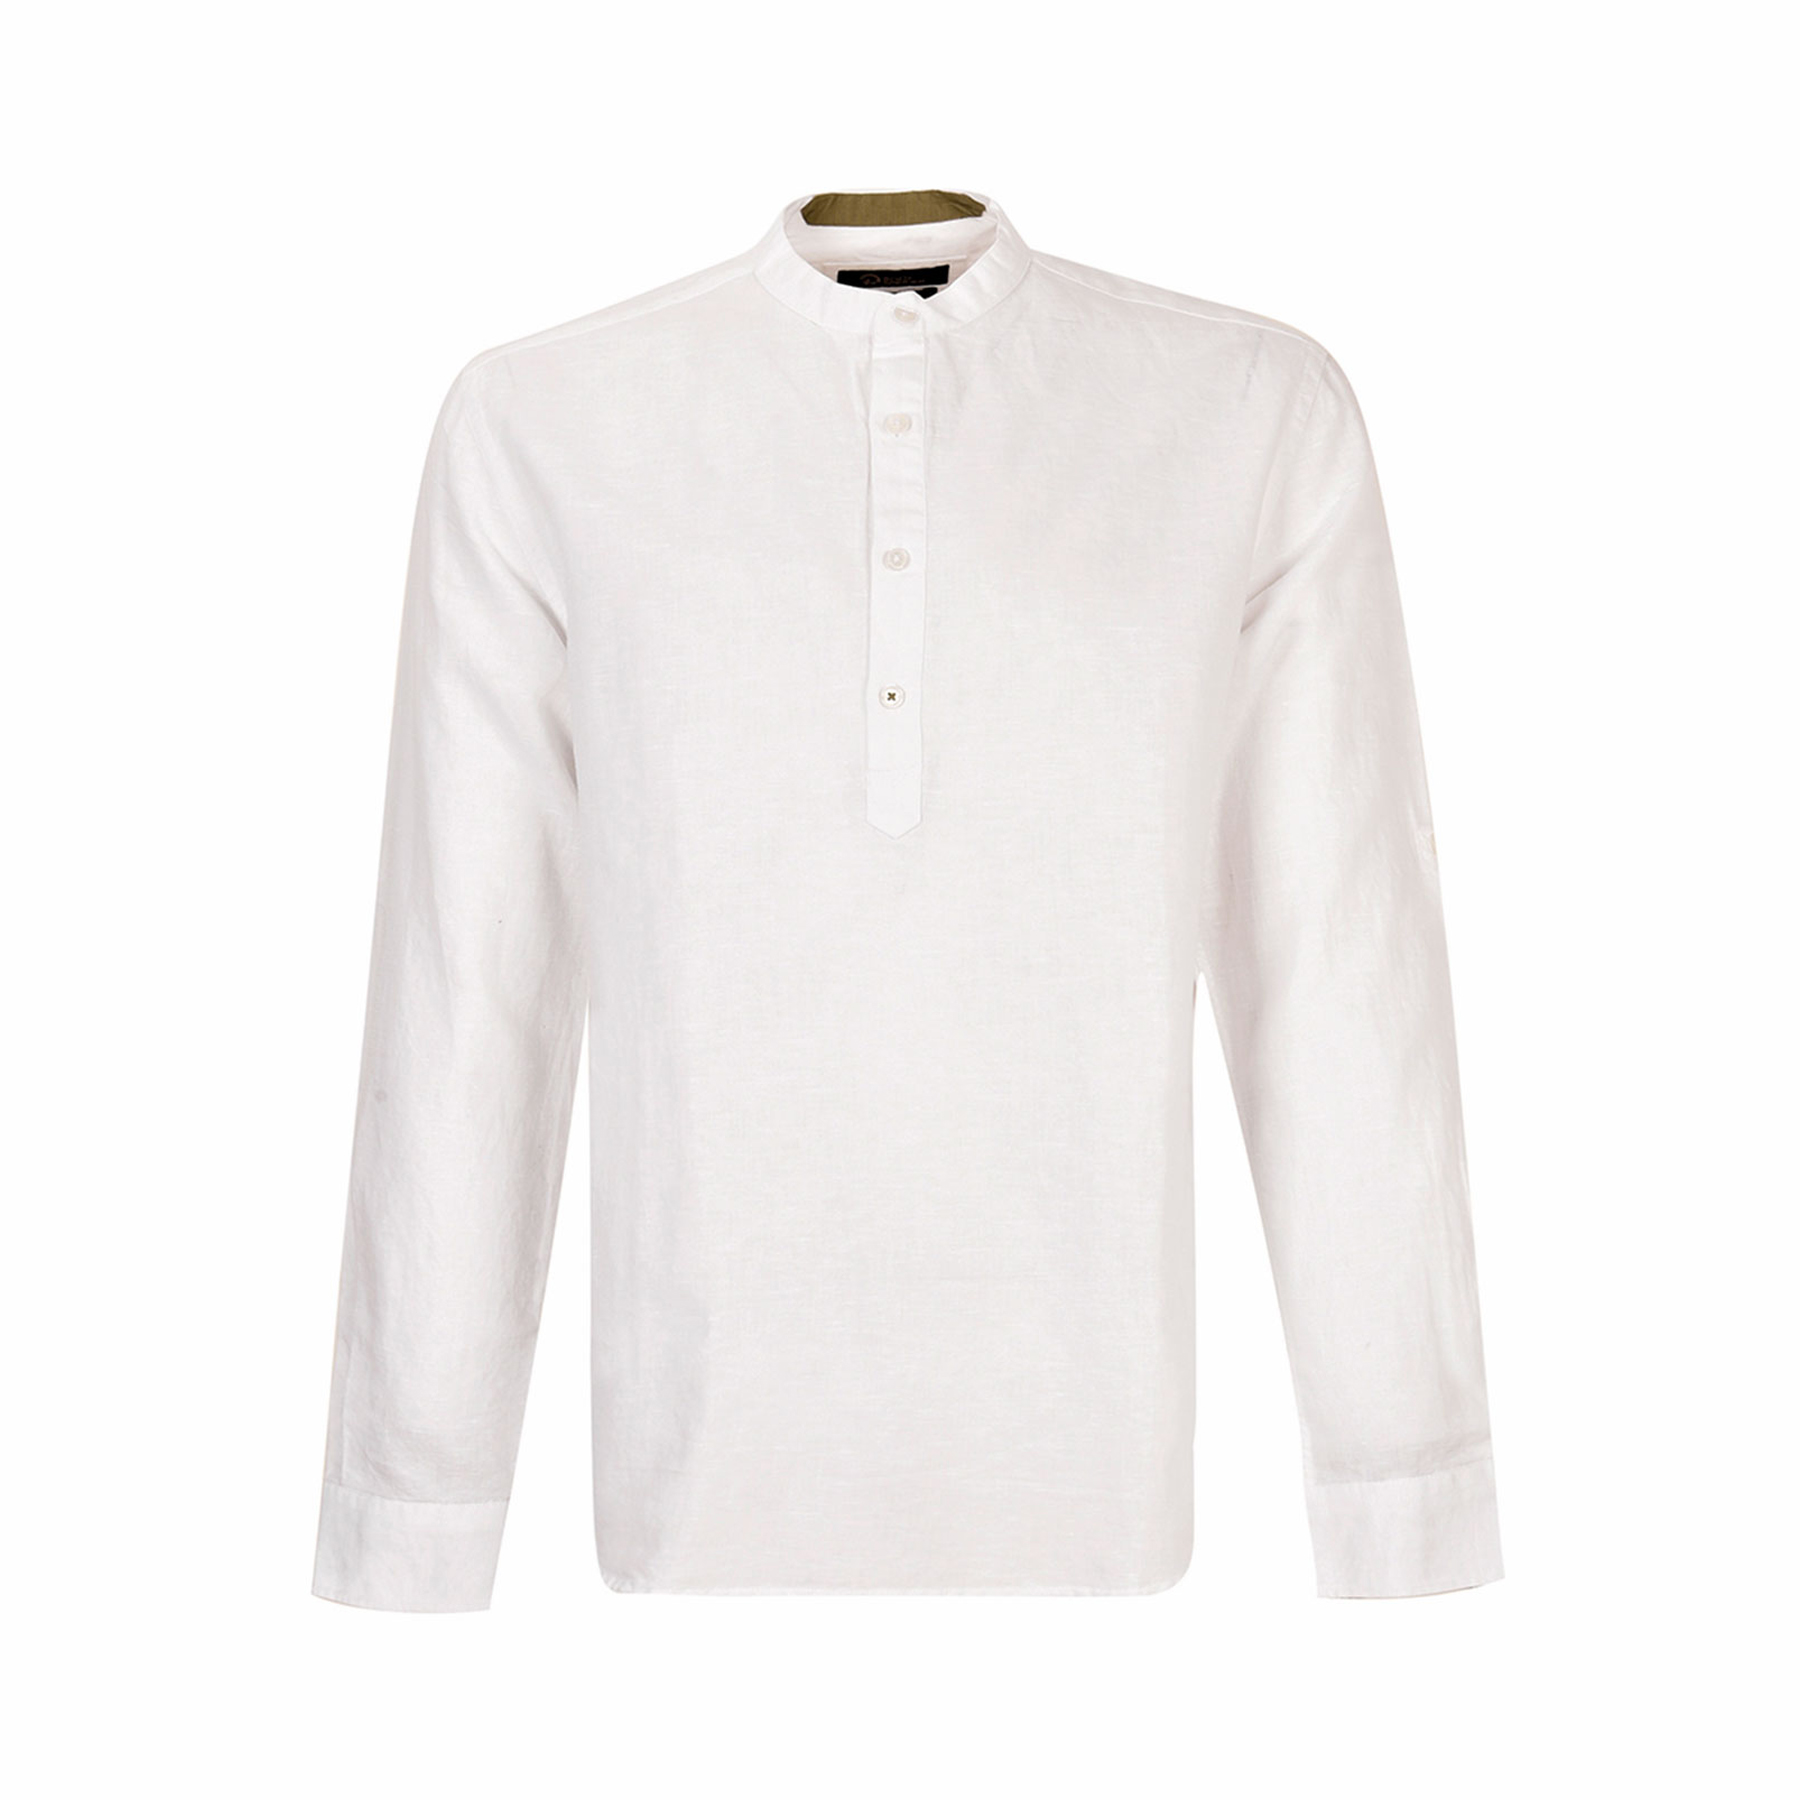 نکته خرید - قیمت روز پیراهن آستین بلند مردانه بادی اسپینر مدل 4195 کد 2 رنگ سفید خرید